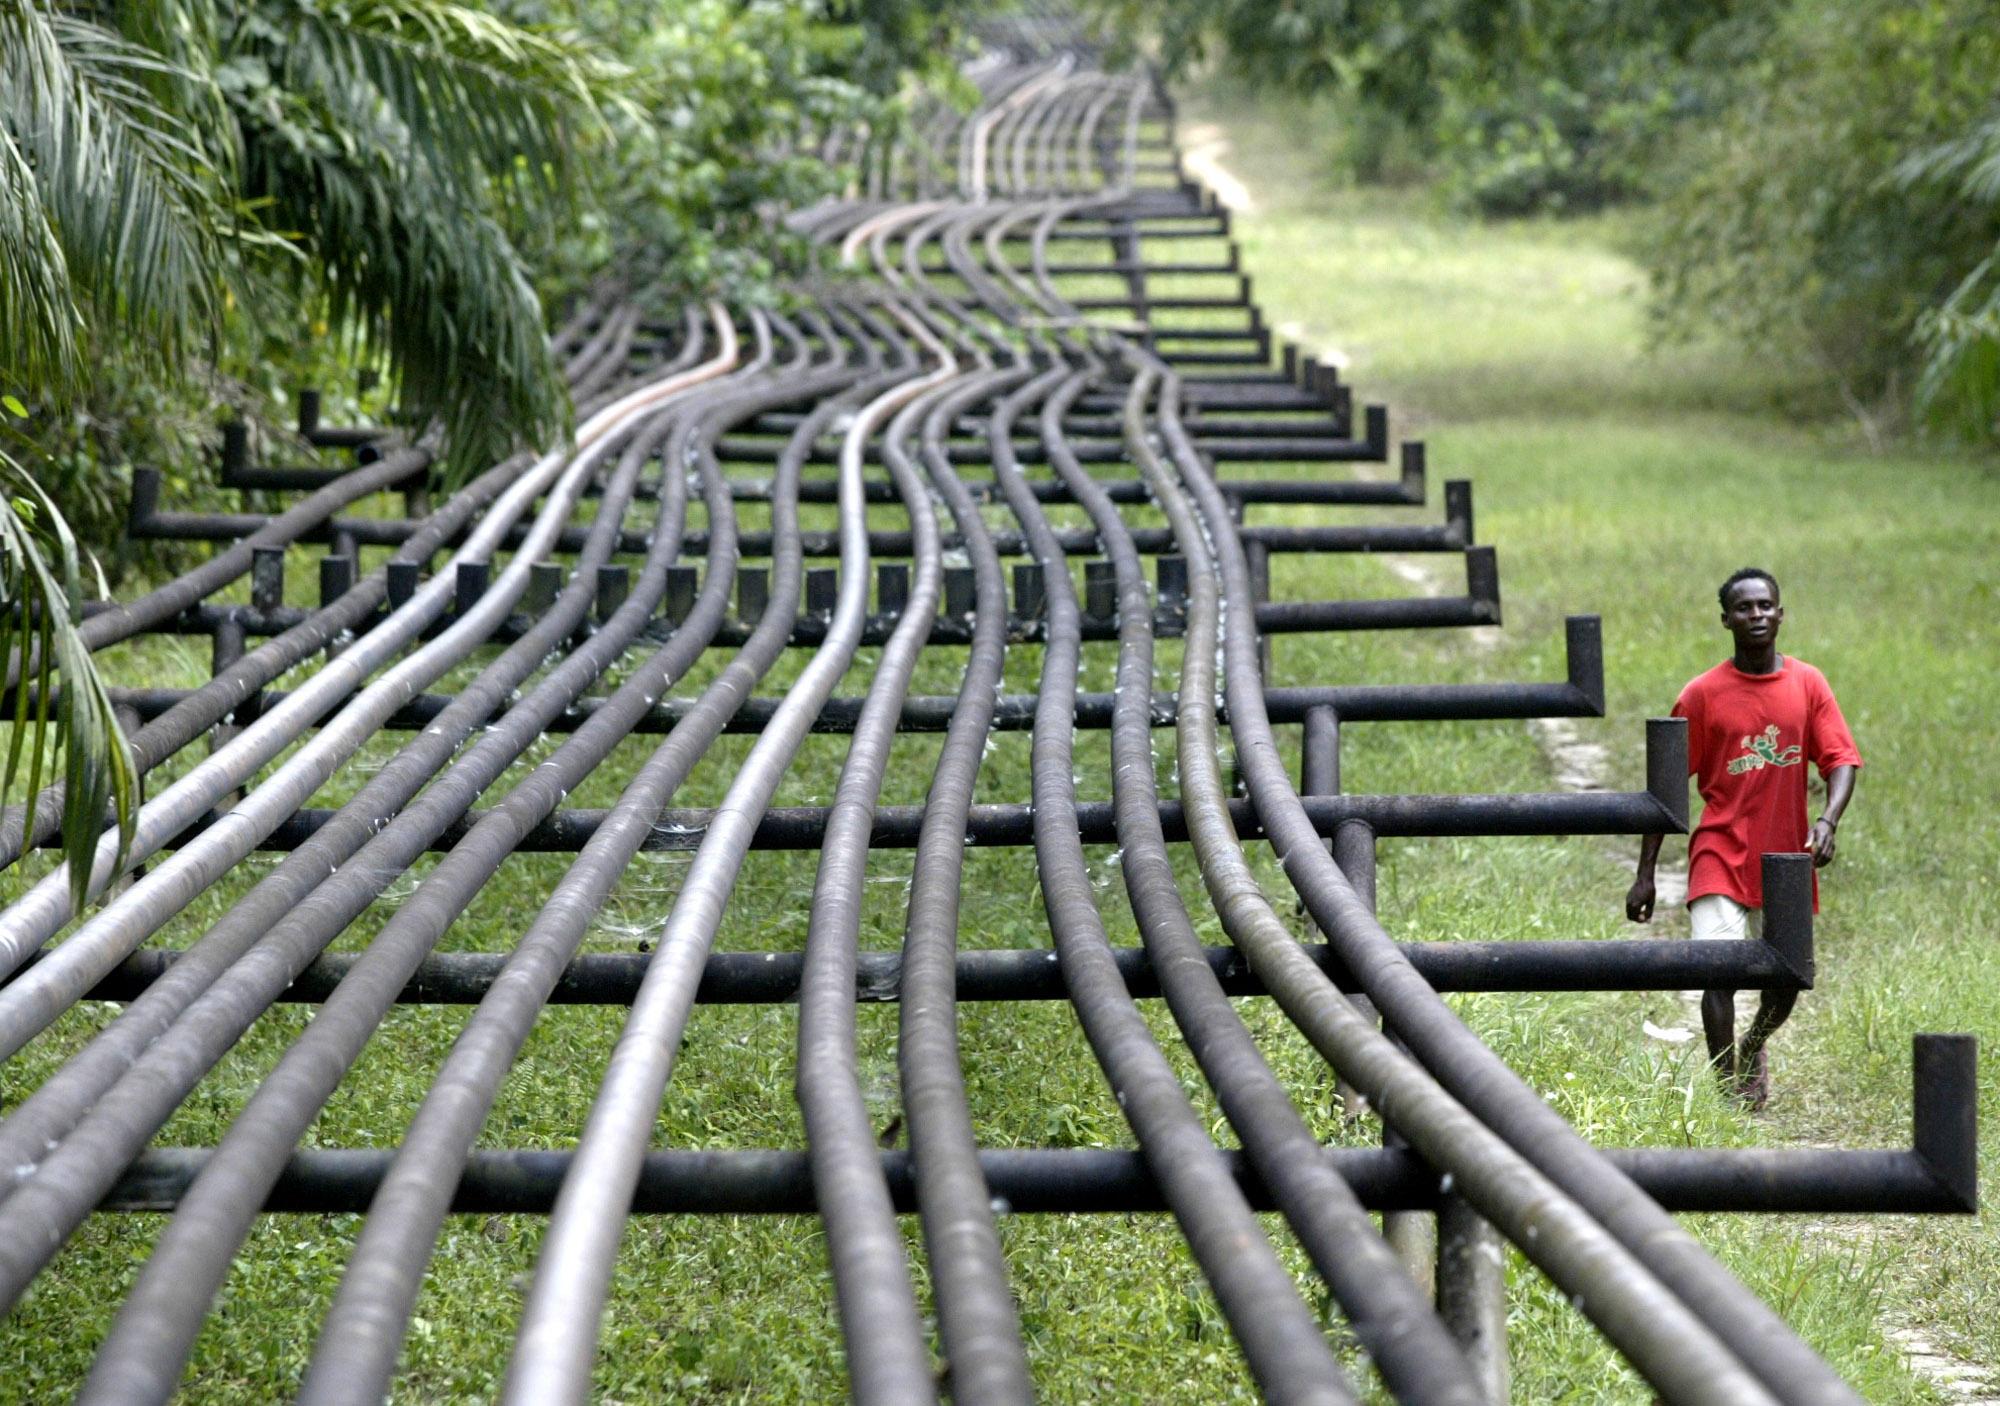 LA NIGERIA LIBERALIZZA L’ACCESSO AI SUOI GASDOTTI E PUNTA AD ATTRARRE INVESTIMENTI INTERNAZIONALI - Pipeline News -  - News